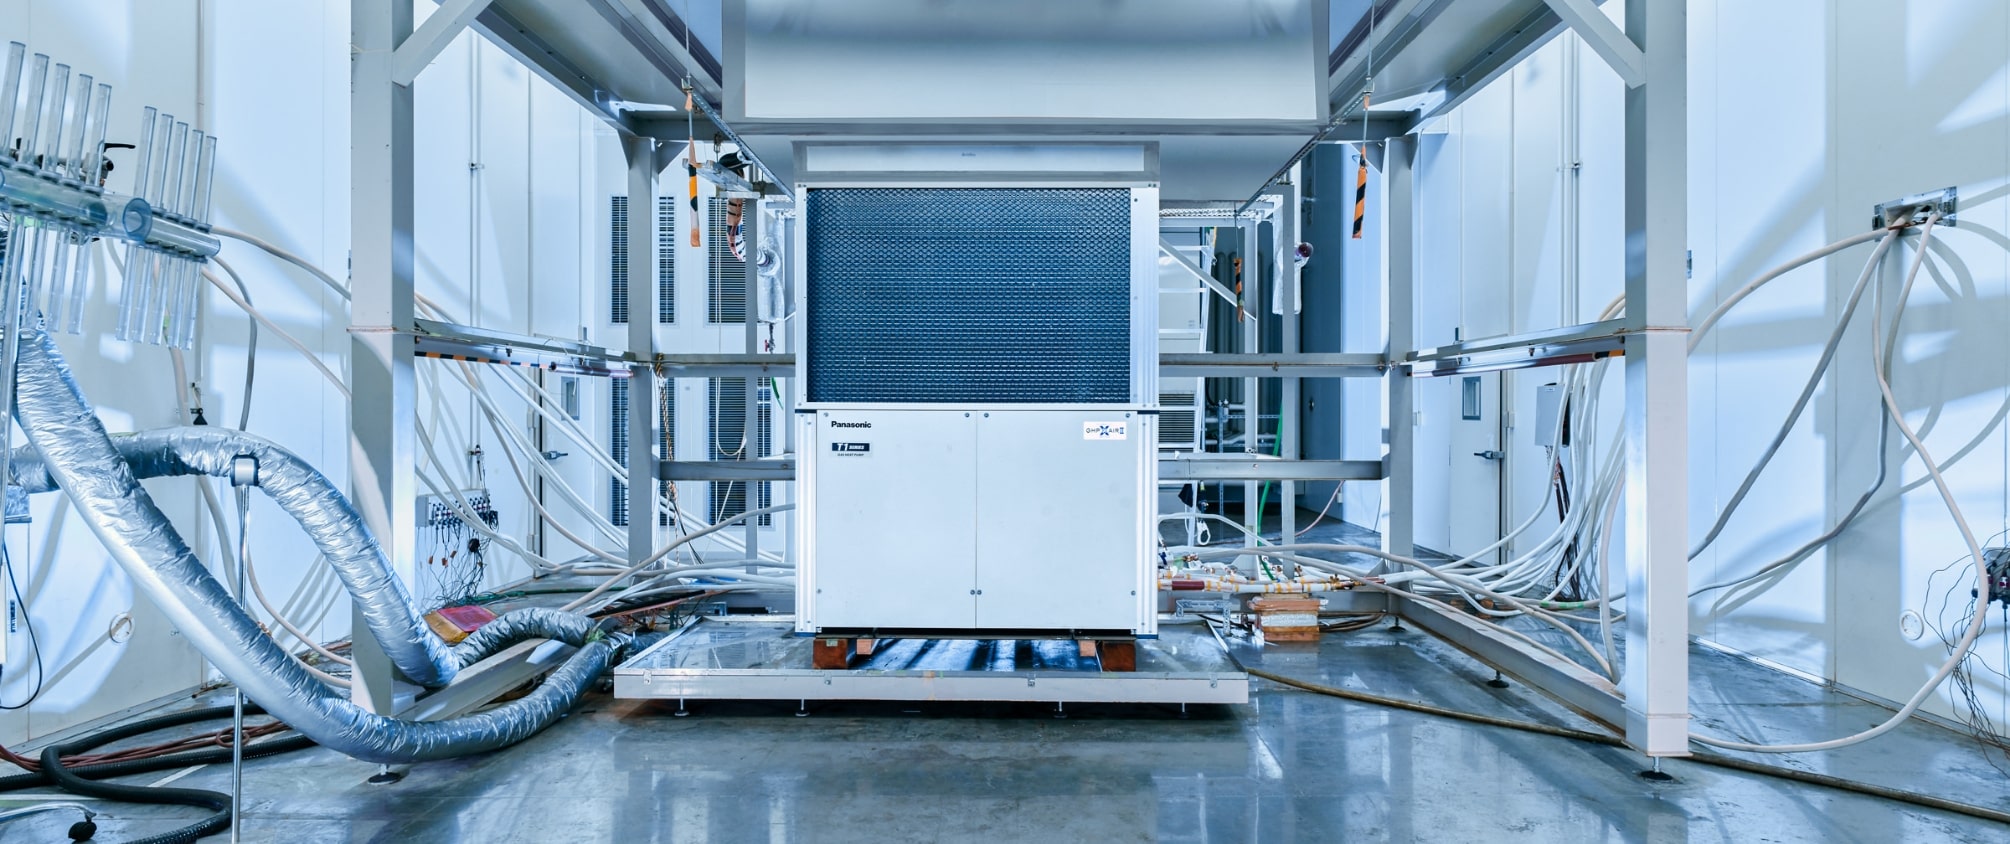 ガスヒートポンプエアコン(GHP)室外機を検査している、性能試験室の画像